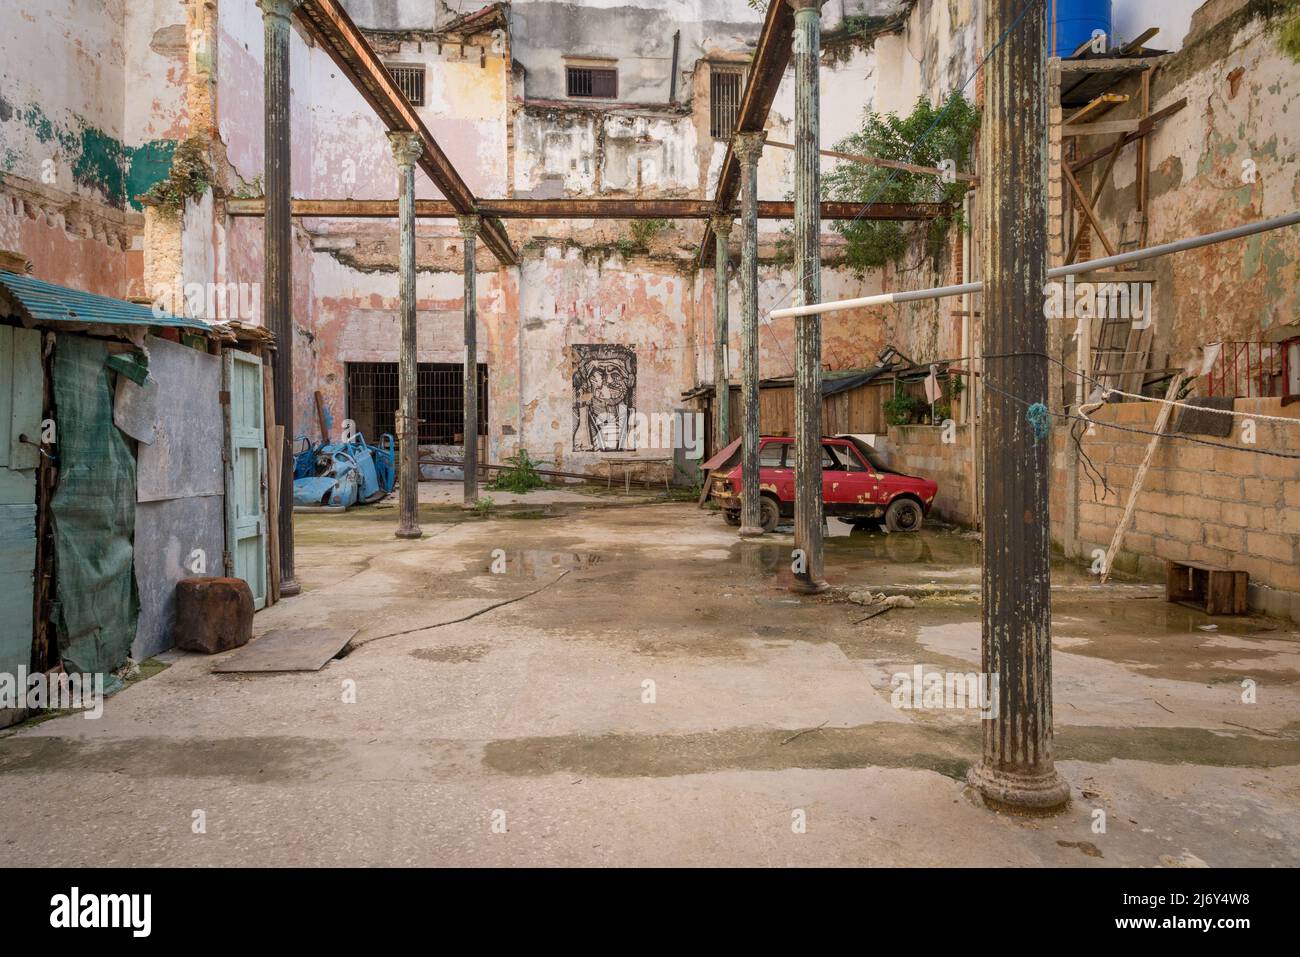 La Habana, Cuba - Lote abandonado en La Habana. La choza de la izquierda está ocupada por personas sin hogar. Foto de stock